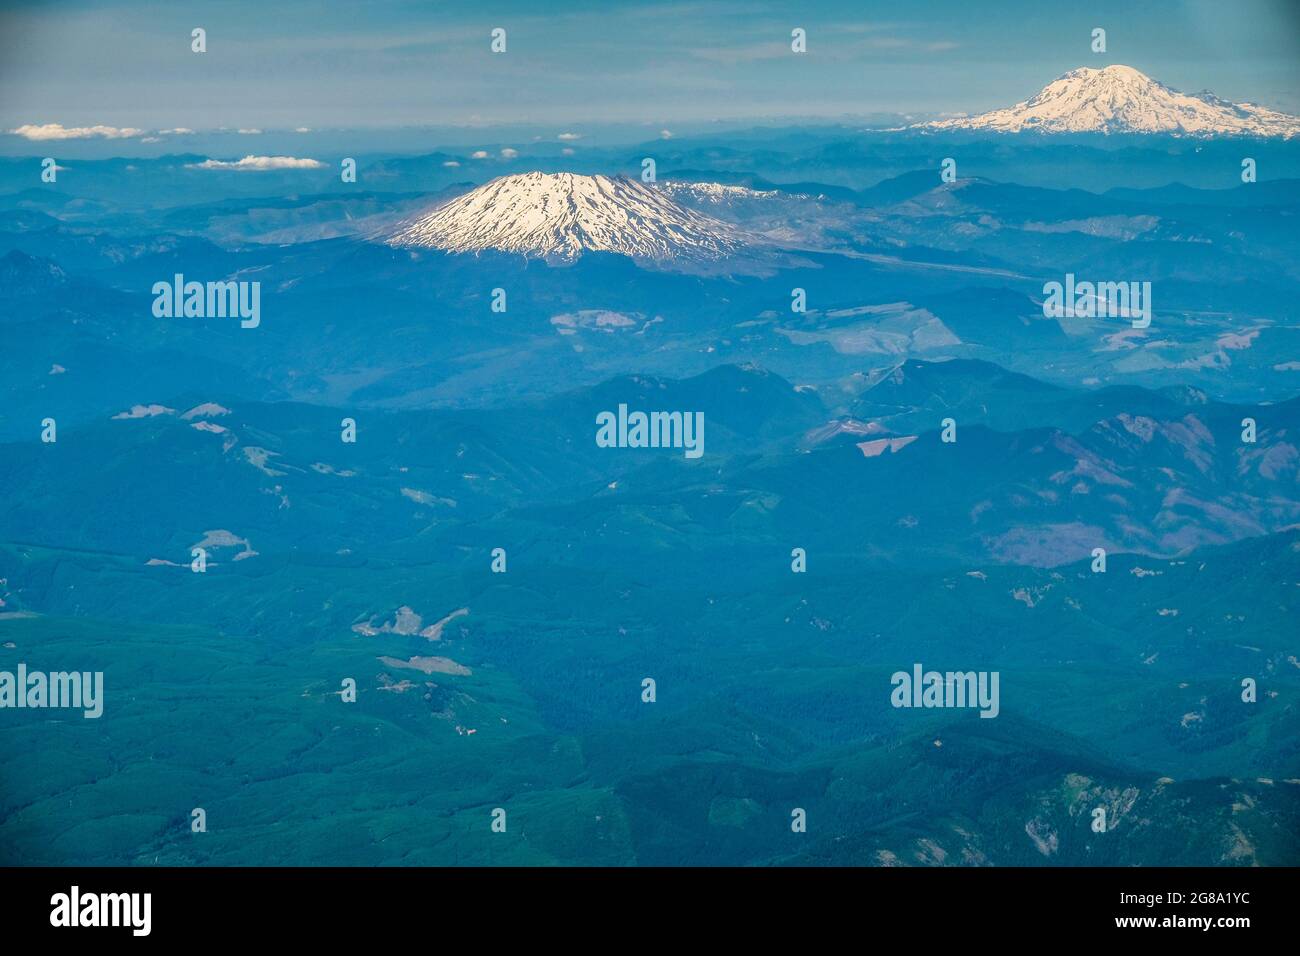 Vista aerea del Monte St. Helens e Mt. Rainier nelle Cascade Mountains dello stato di Washington, Stati Uniti. Foto Stock